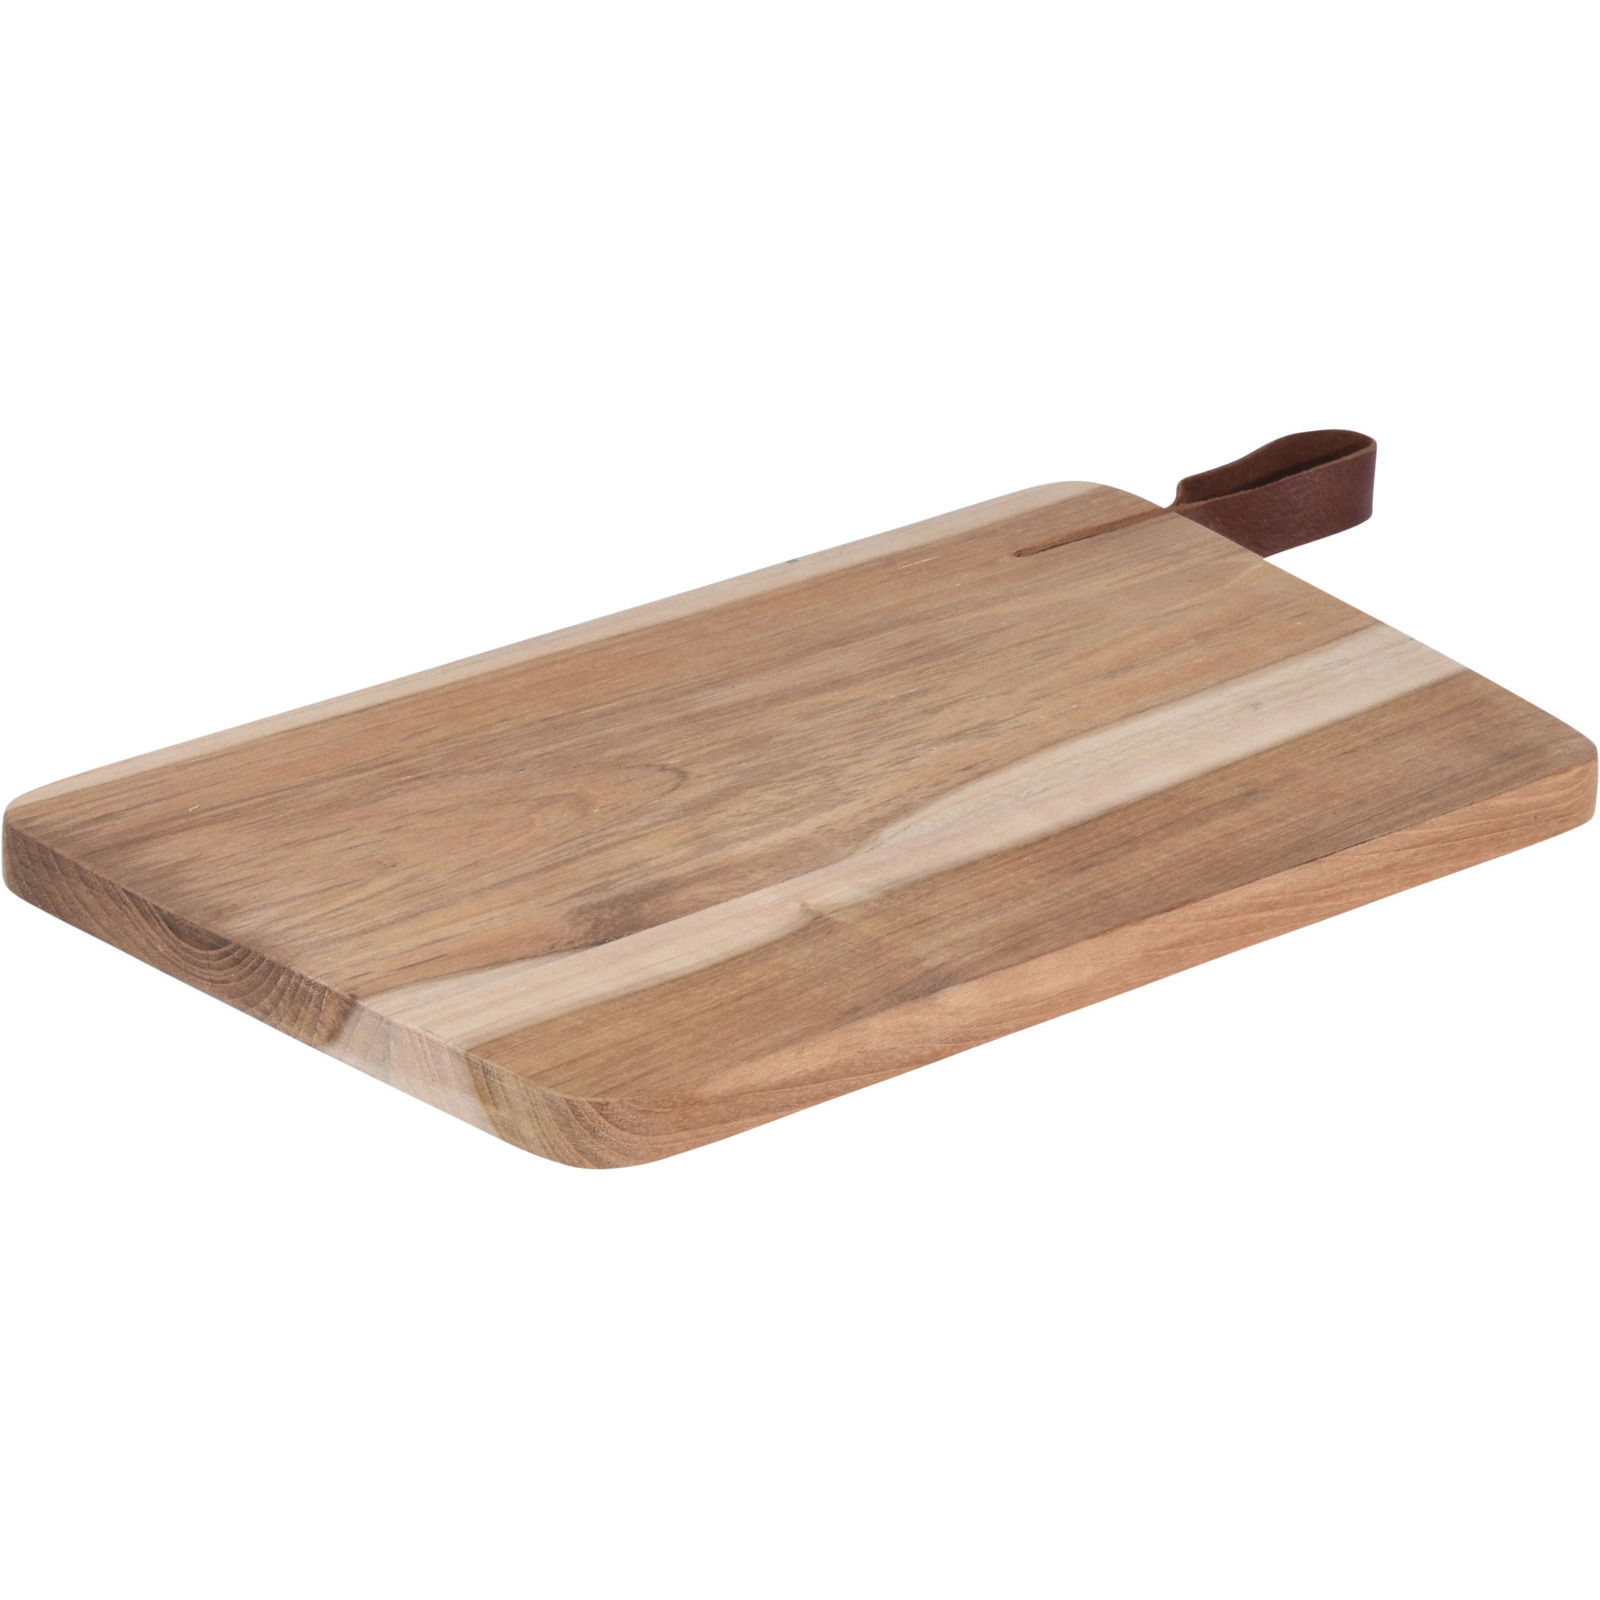 Houten snijplank-serveerplank met leren hengsel 30 cm